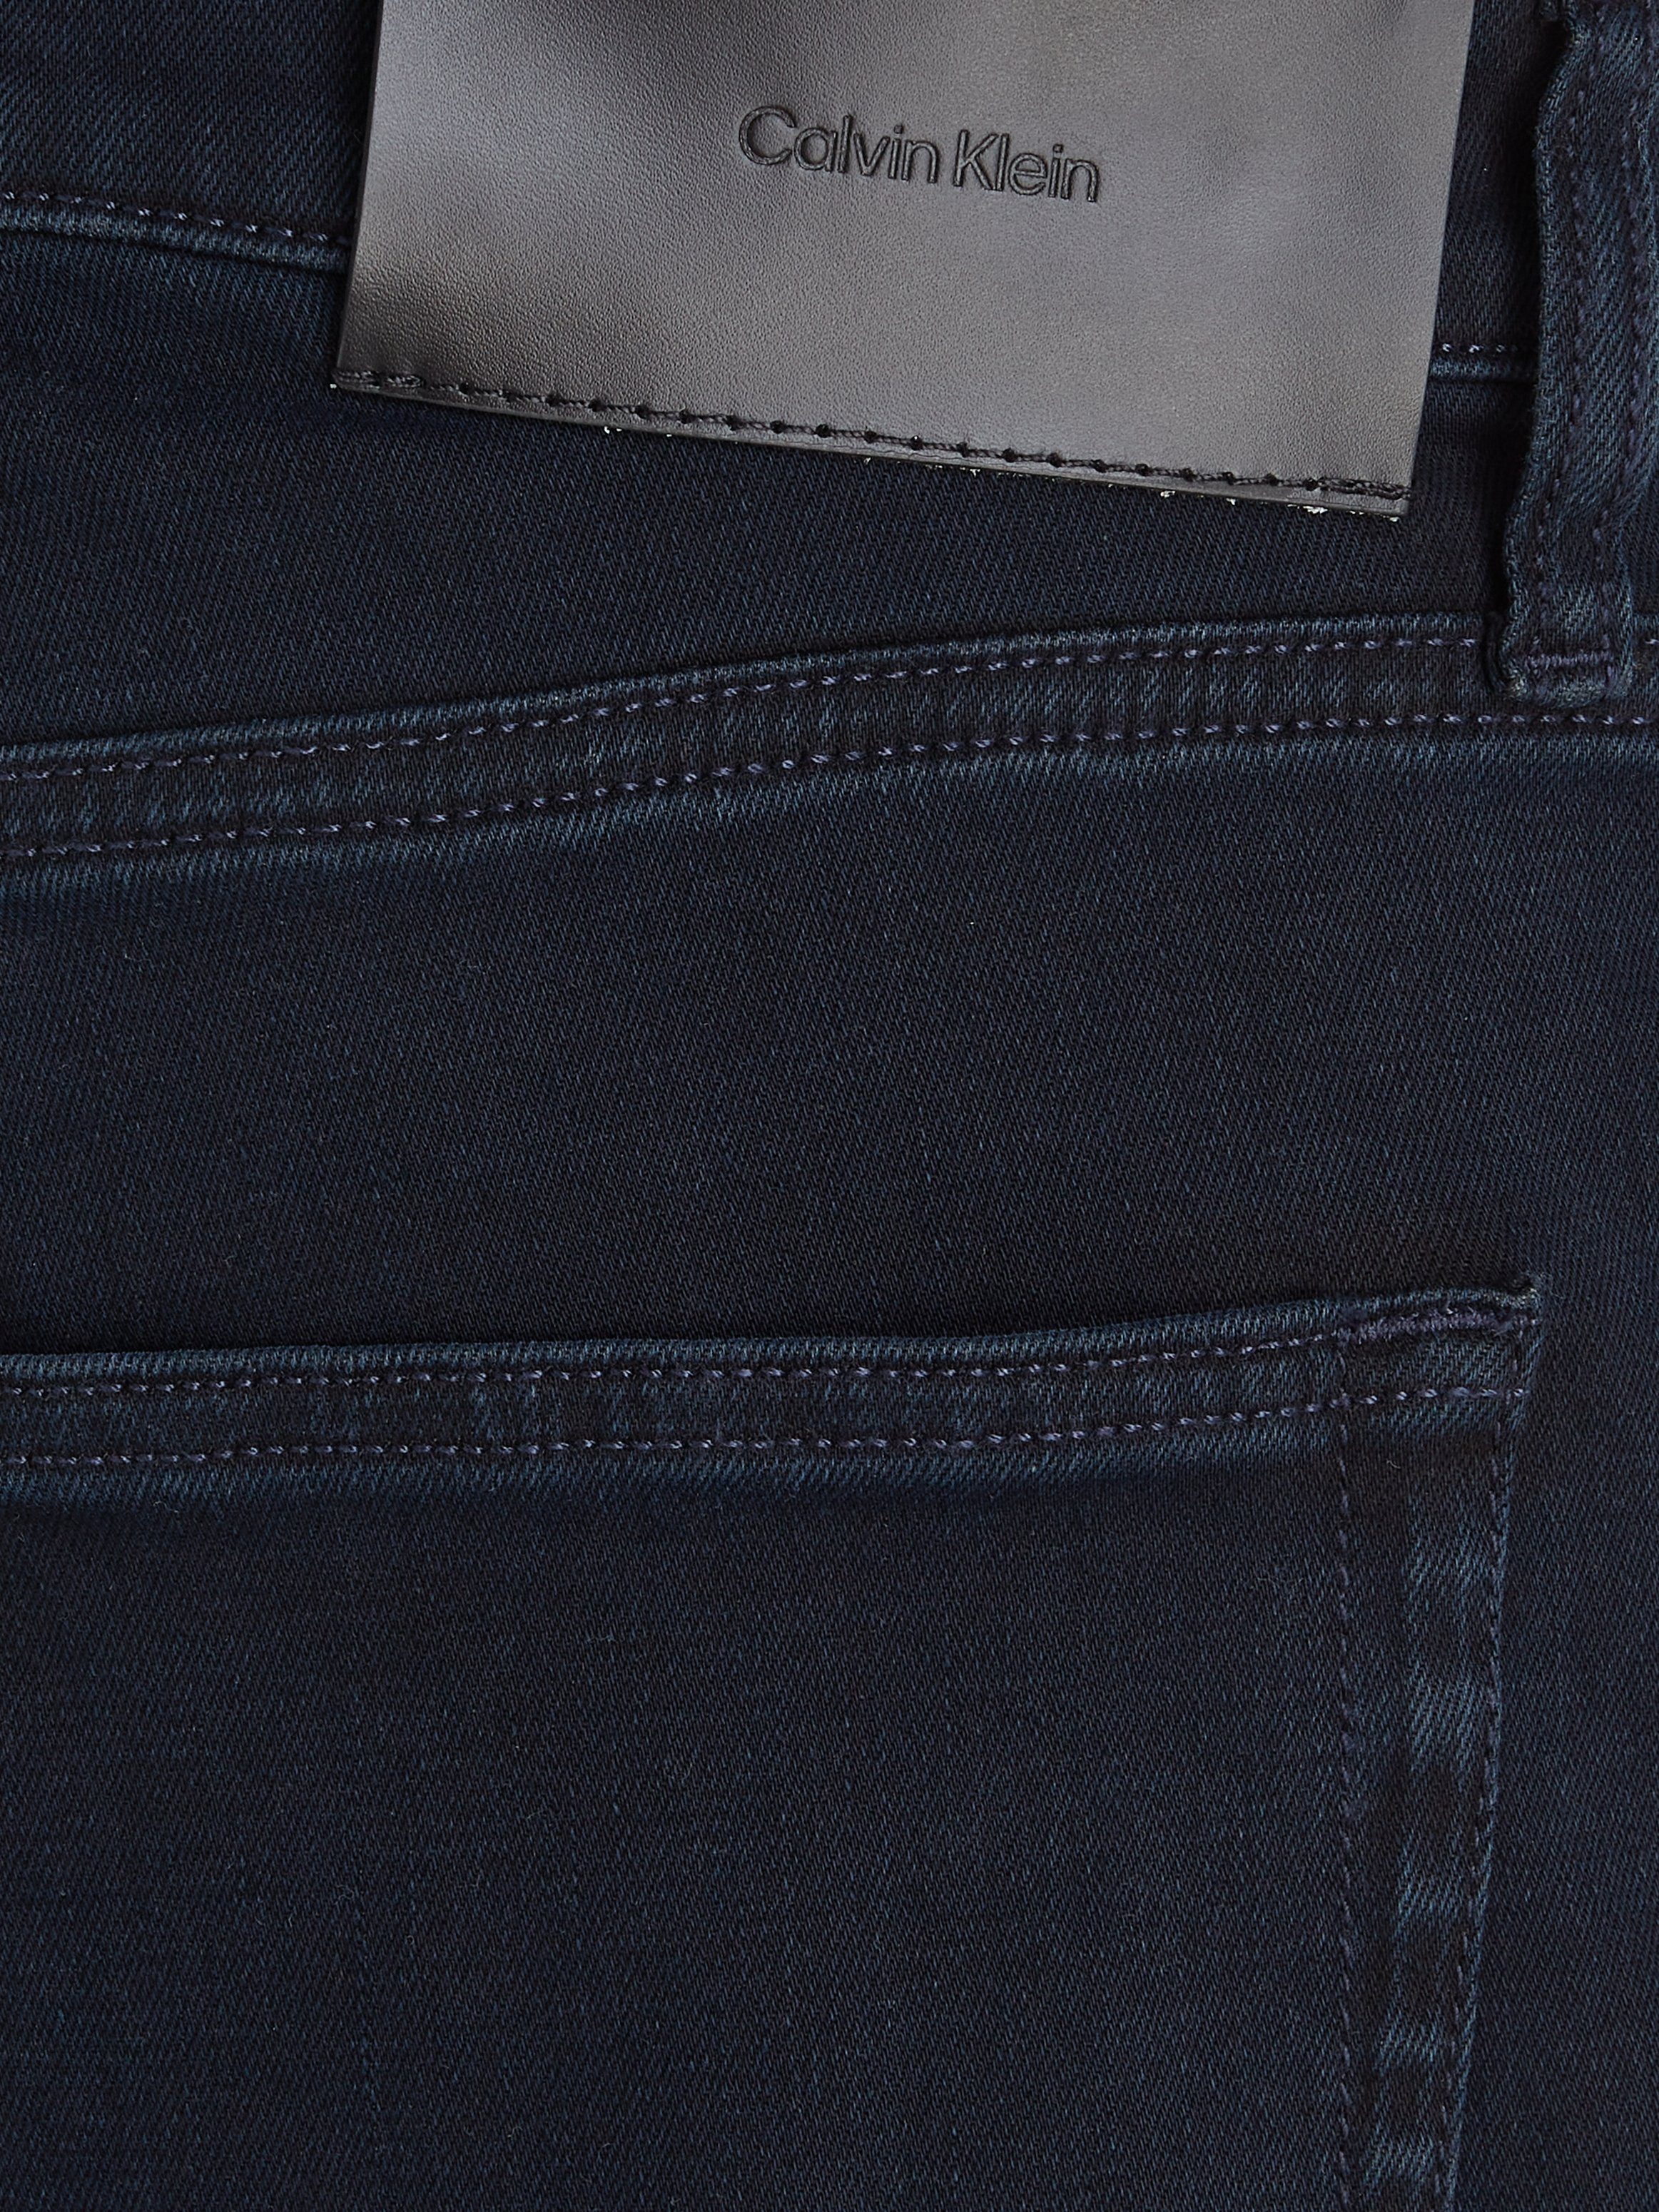 Calvin Klein Gerade Jeans BLUE TAPERED BLACK mit Markenlabel